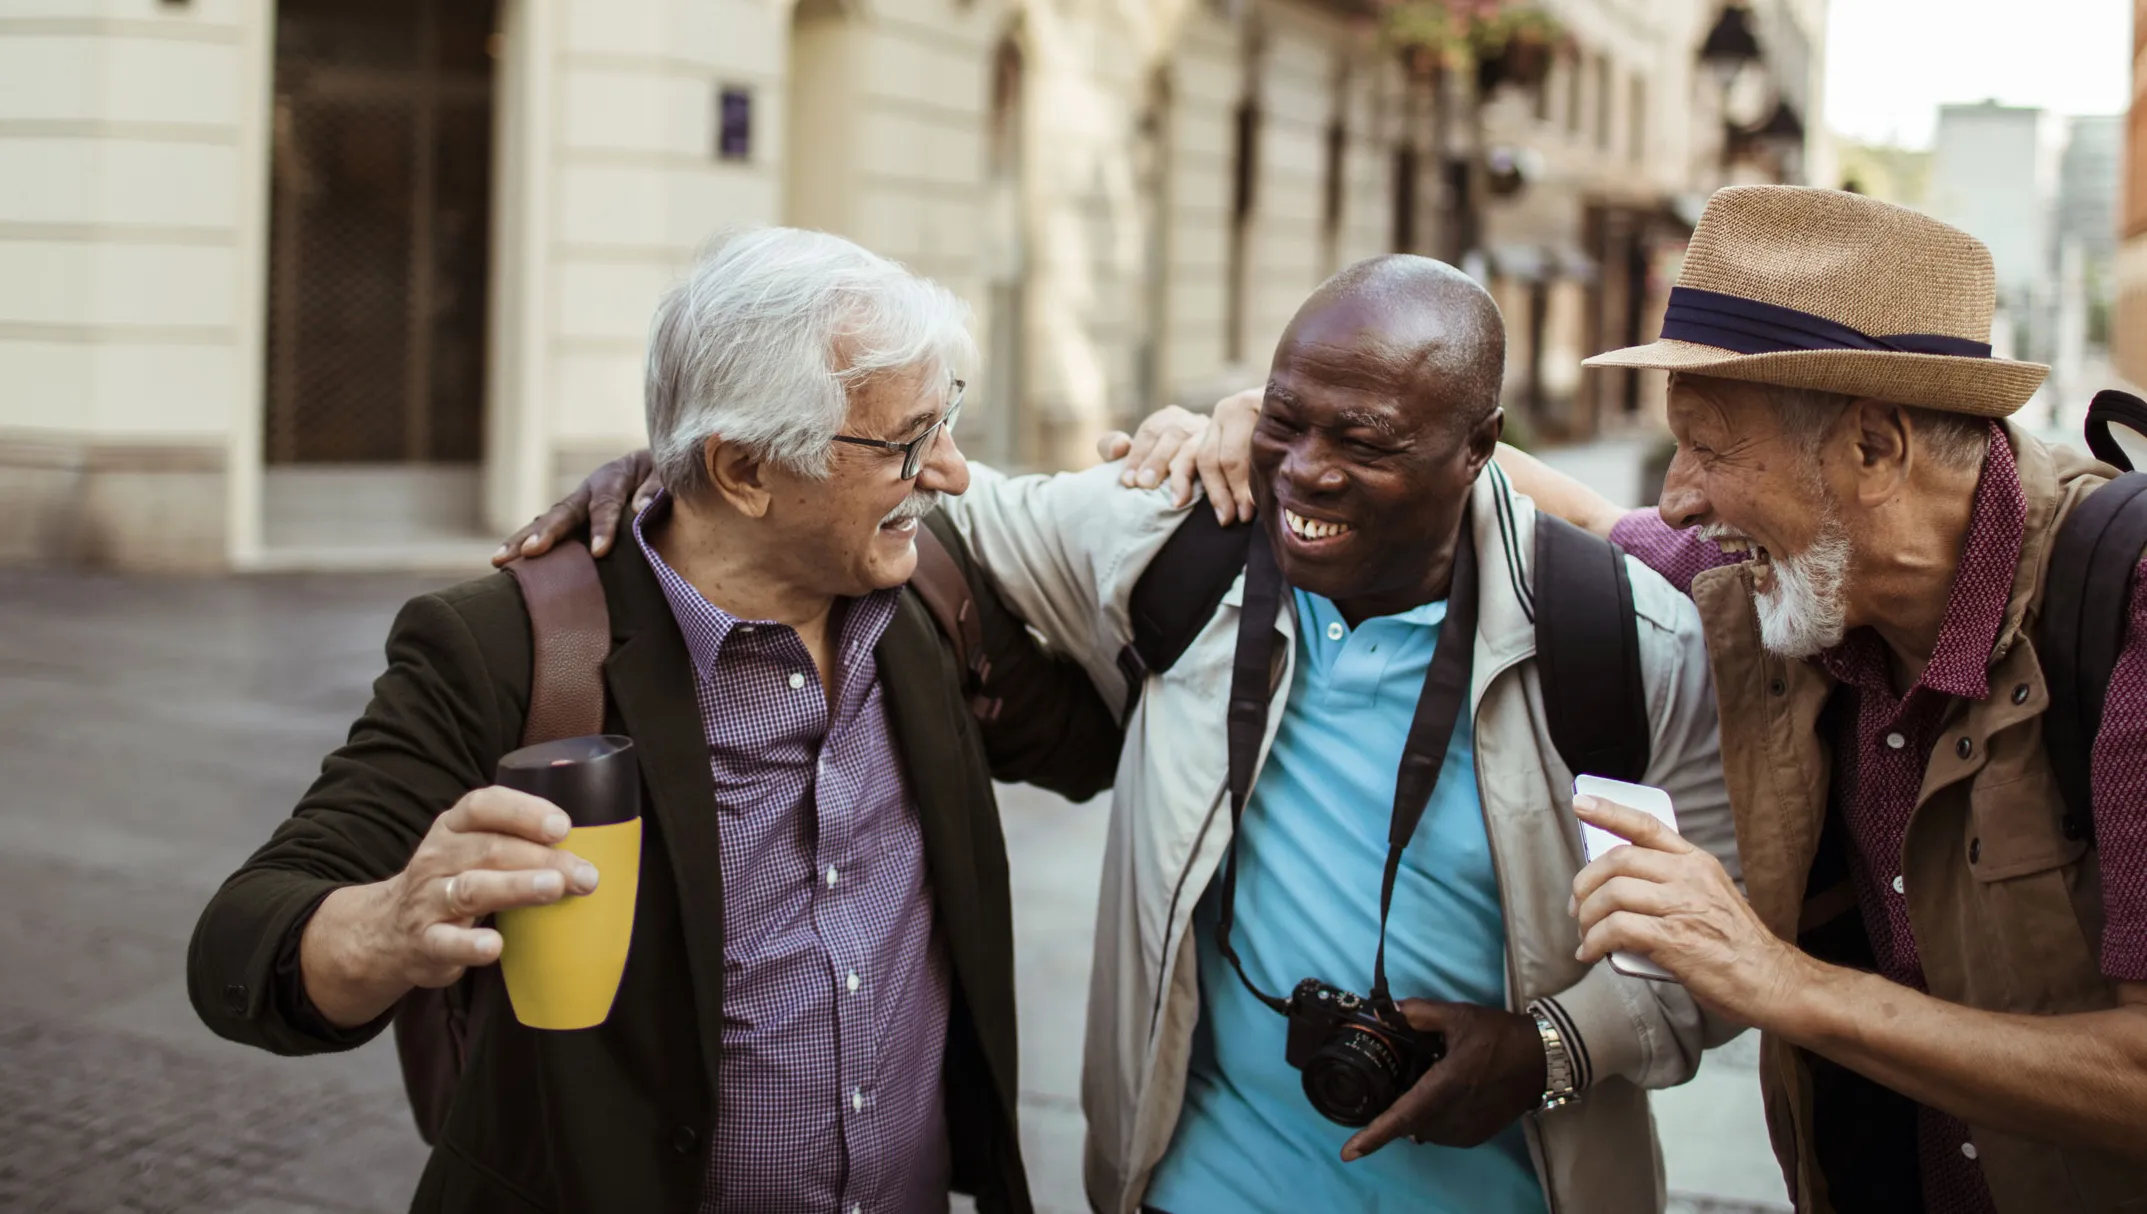 Trois hommes d’un certain âge rient ensemble, bras dessus, bras dessous, dans une rue pittoresque. L'un tient une tasse de voyage, l'autre un appareil photo et le troisième un téléphone mobile.